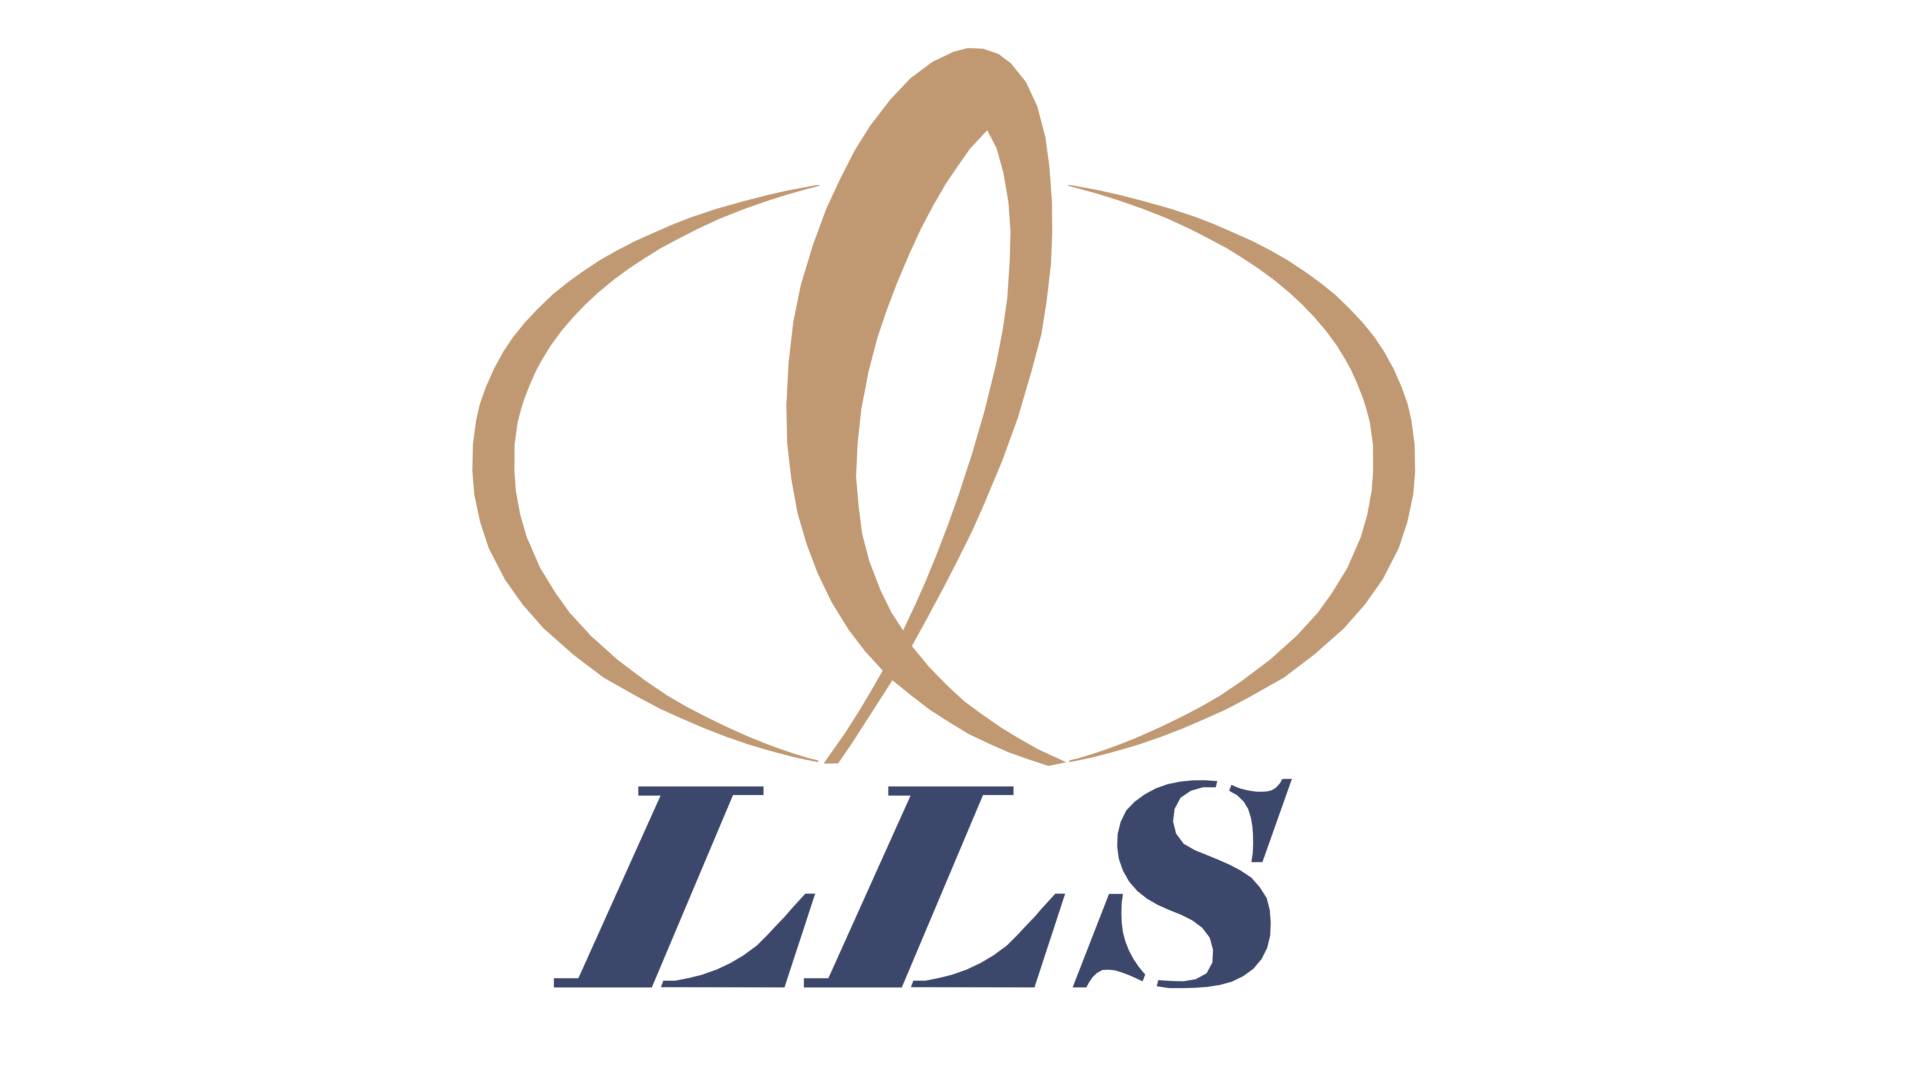 Lakshmi Life Sciences Limited